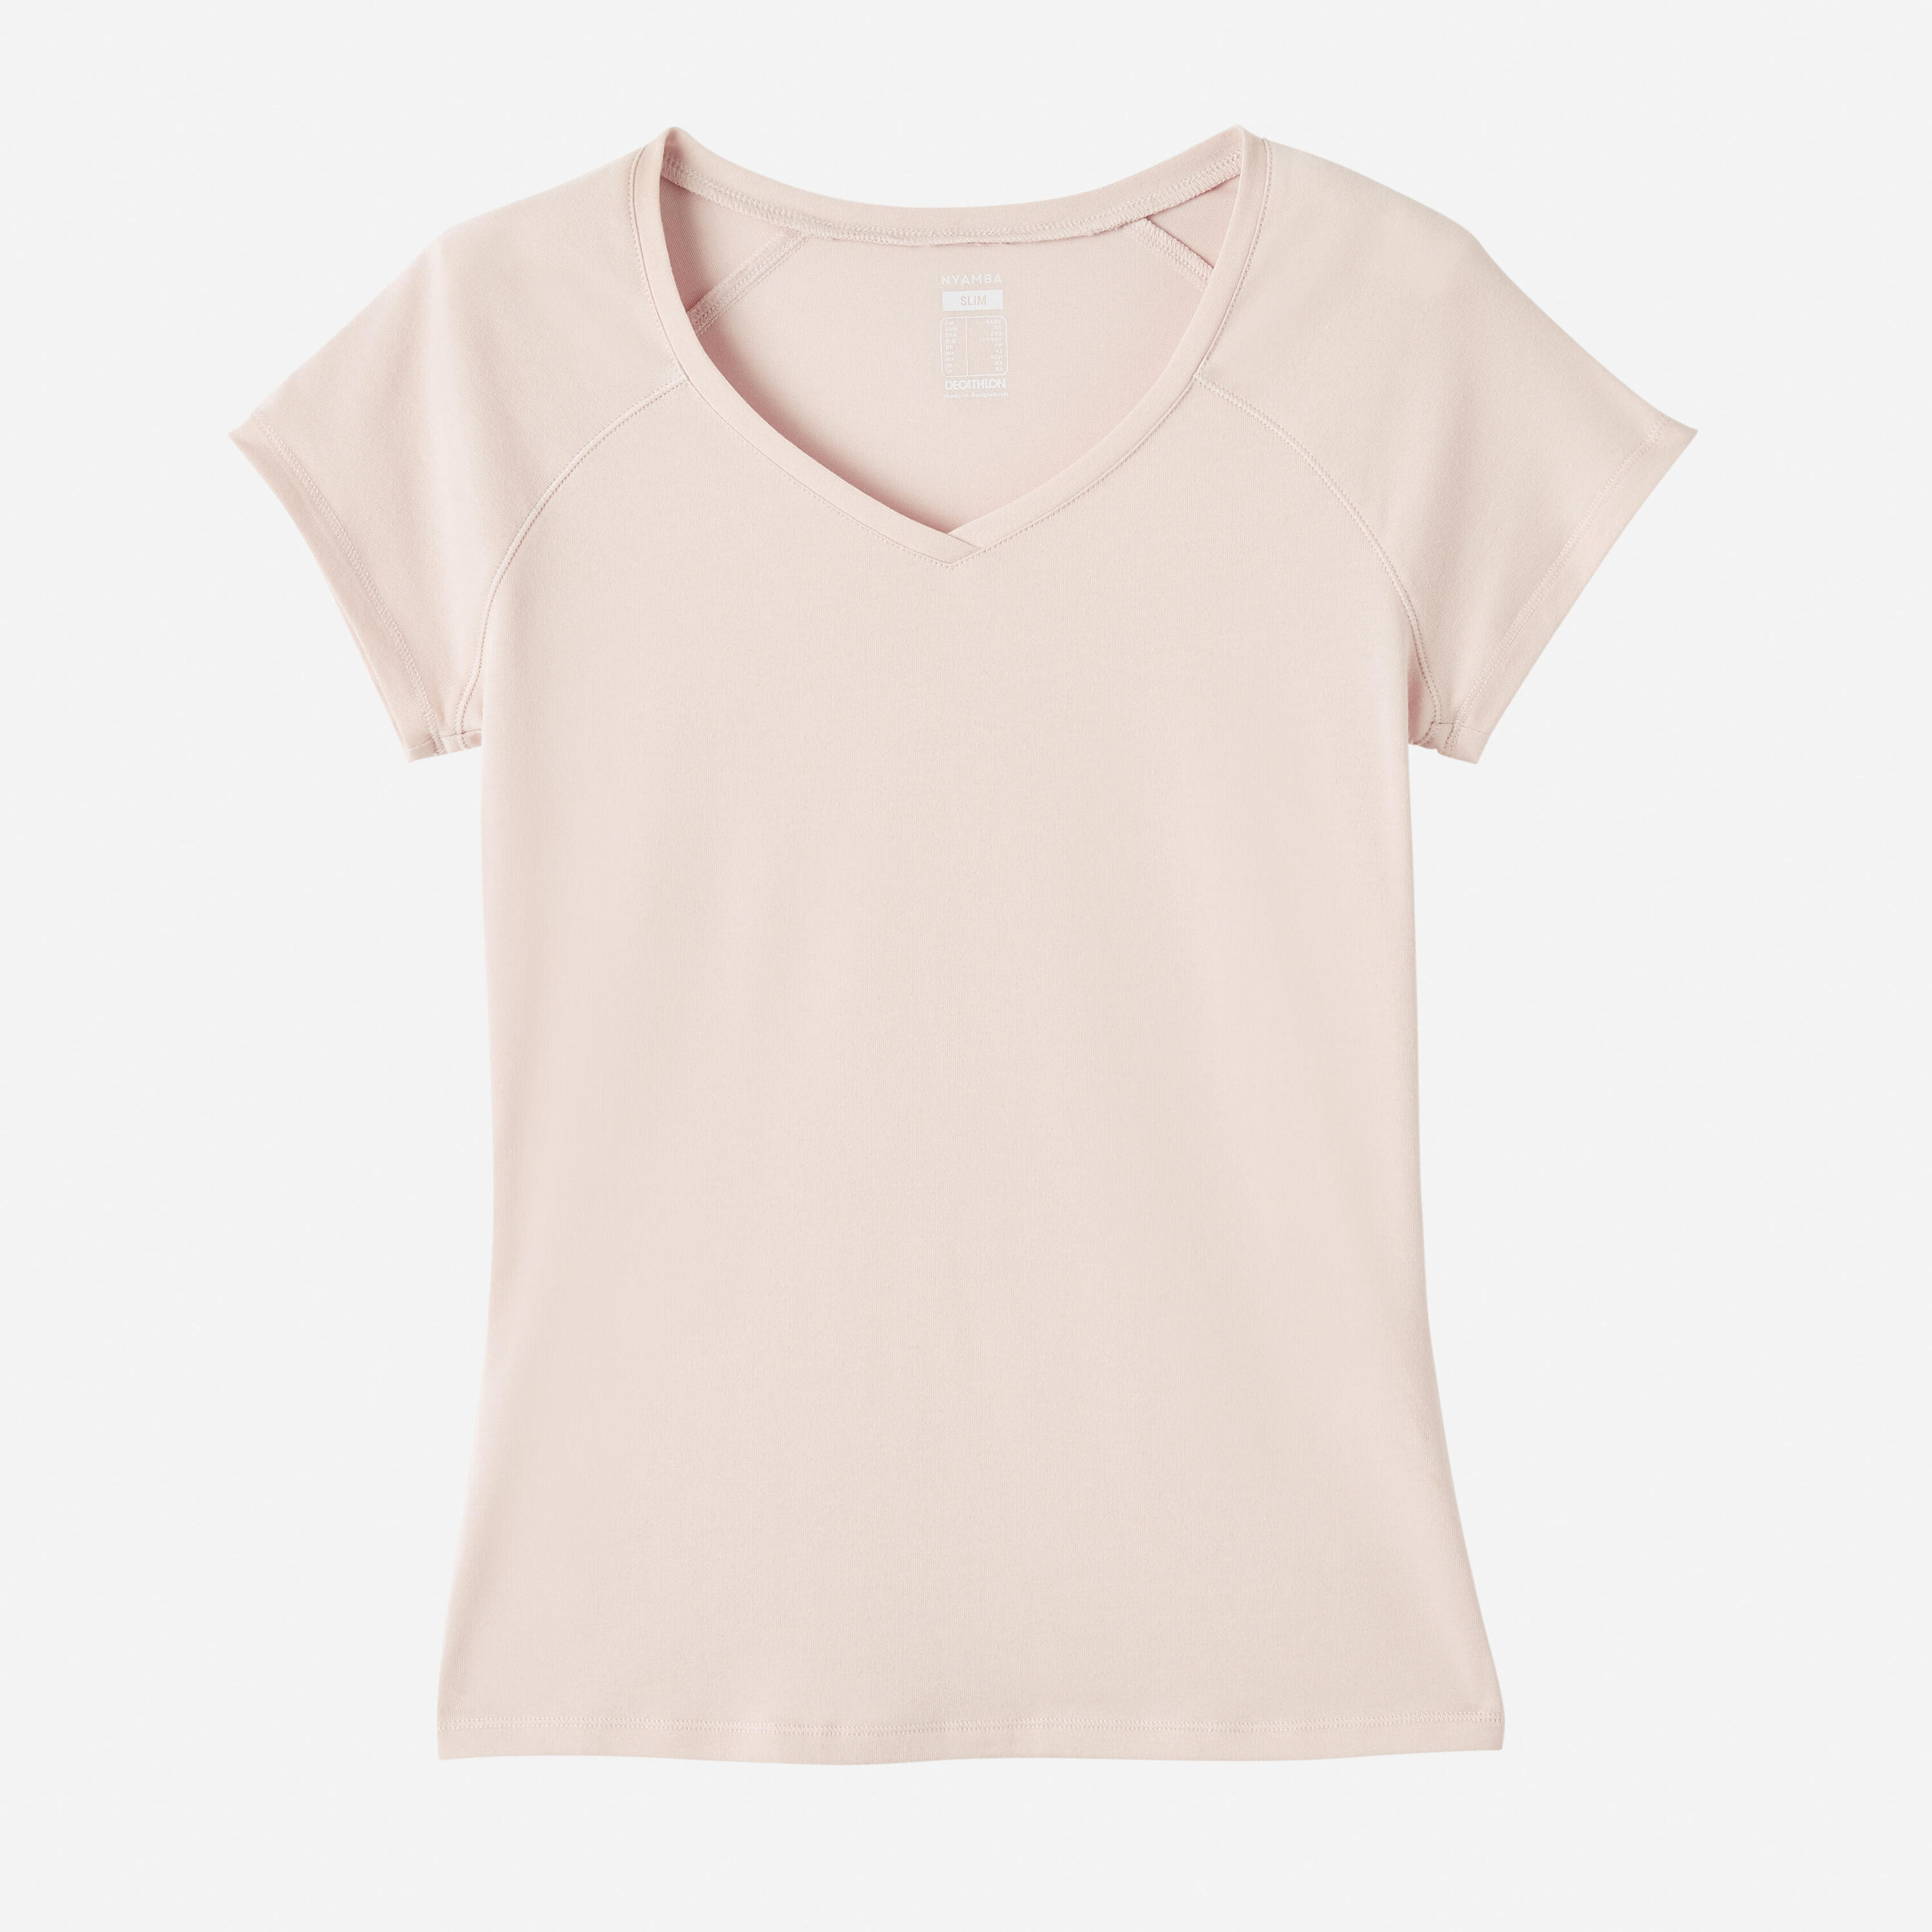 Women's V-Neck Fitness T-Shirt 500 - Rose Quartz 6/6